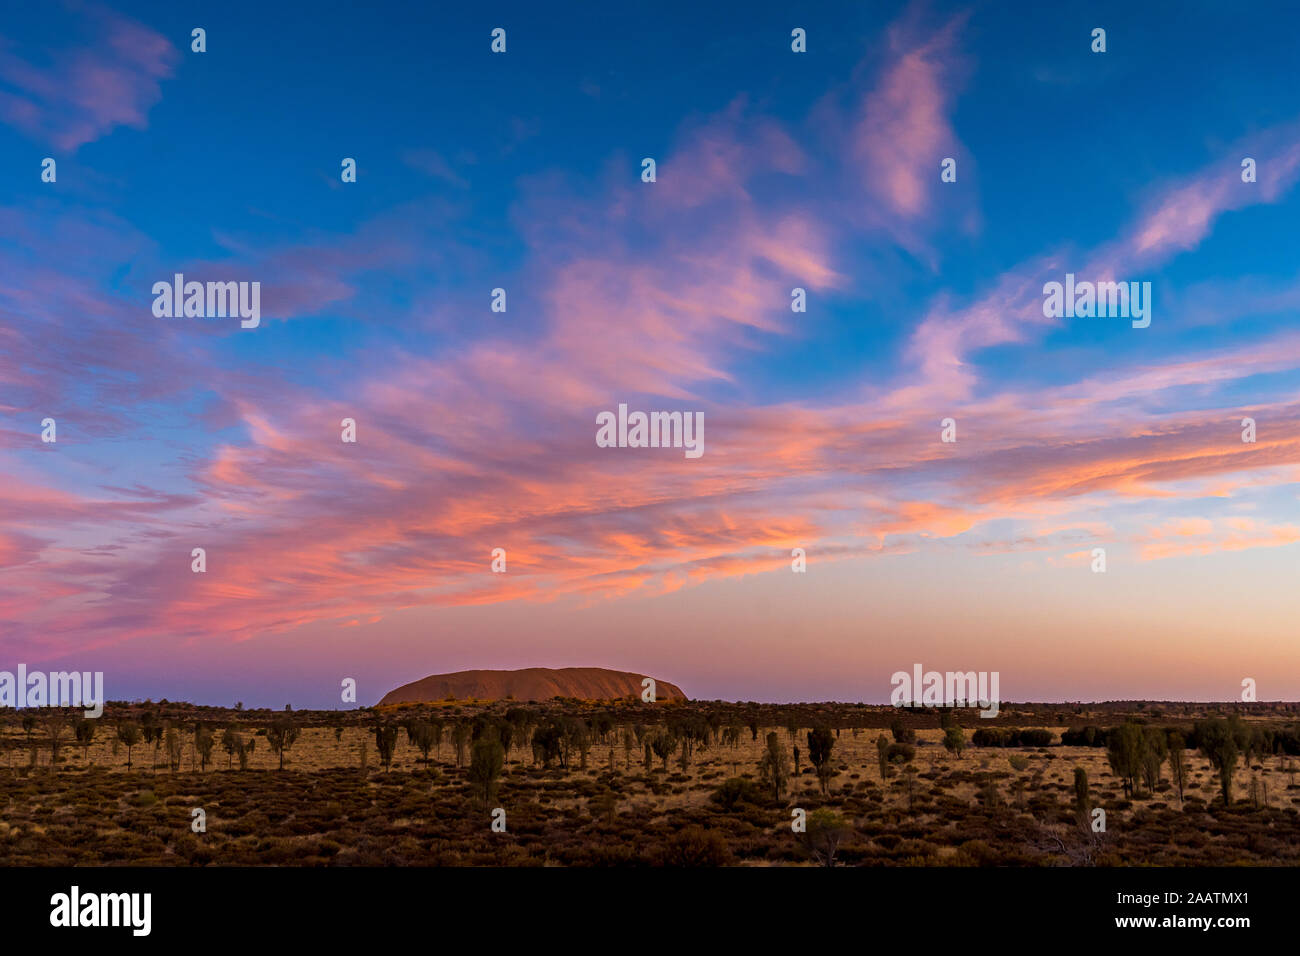 Uluru, aussi connu sous le nom de Ayers Rock, au coucher du soleil avec d'intéressantes formations nuageuses au-dessus. Territoire du Nord, Australie. Banque D'Images